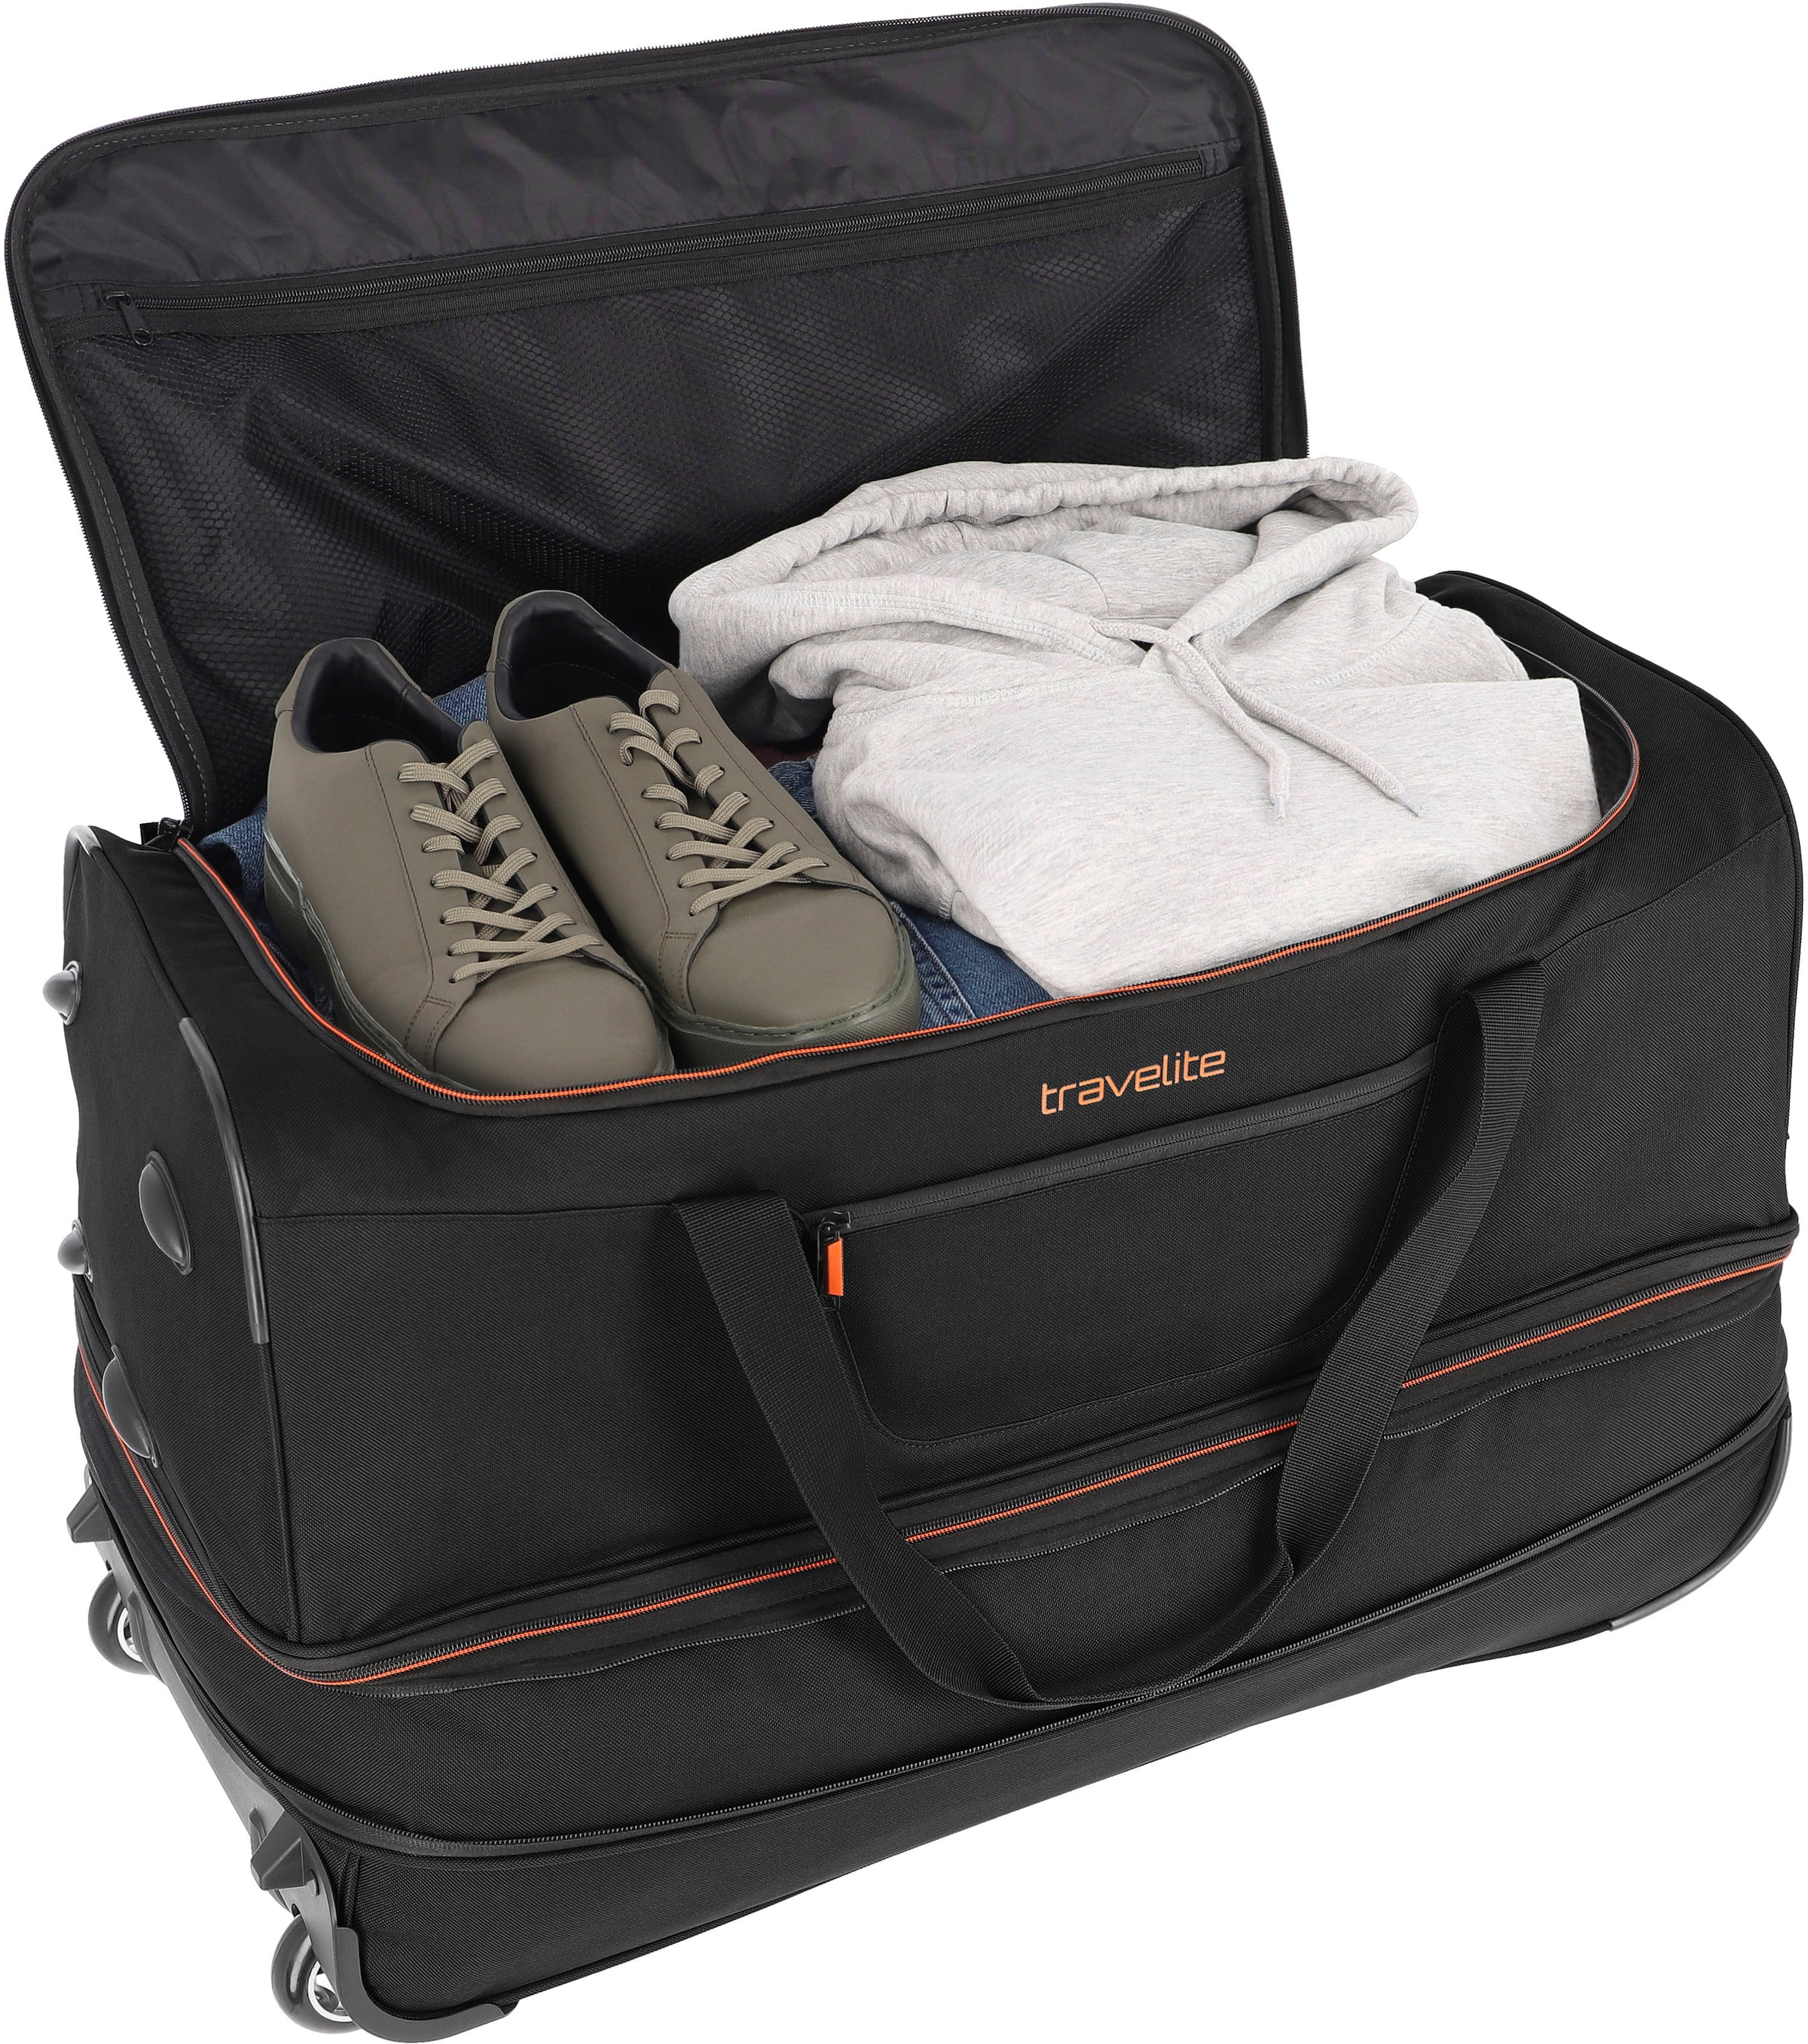 travelite Reisetasche »Basics, 70 cm«, Volumenerweiterung mit ♕ bei und Trolleyfunktion